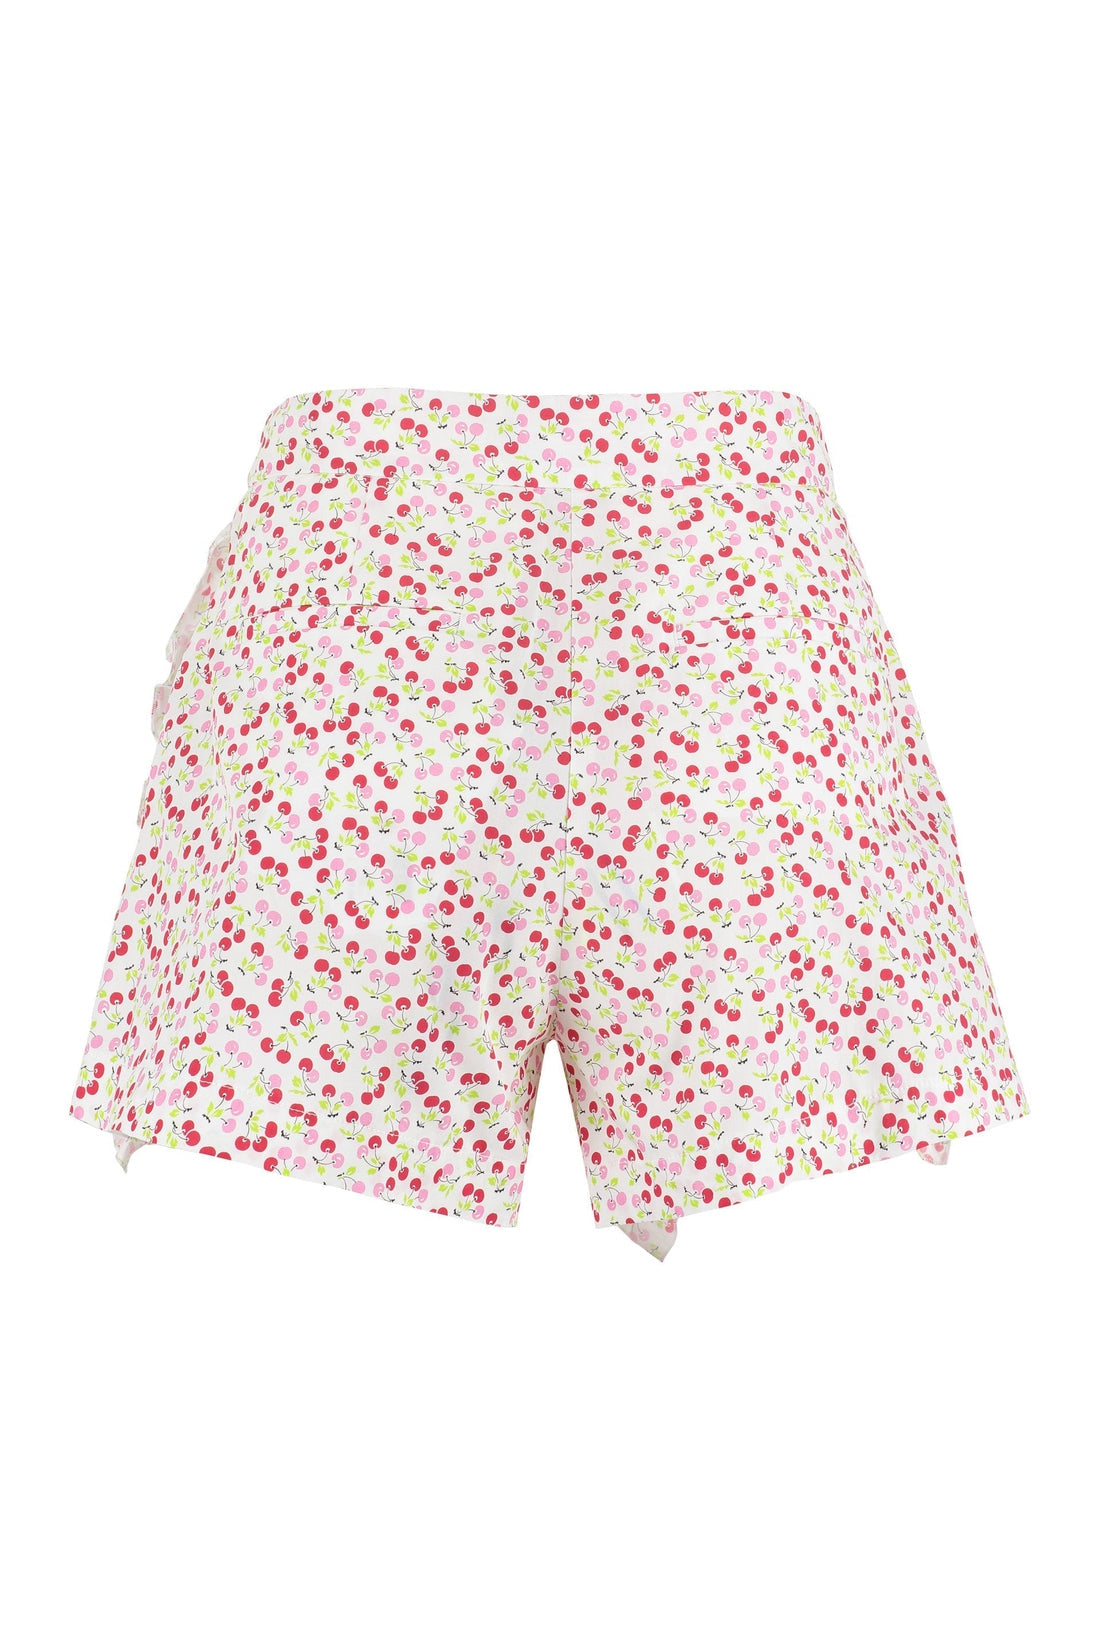 MSGM-OUTLET-SALE-Printed cotton shorts-ARCHIVIST